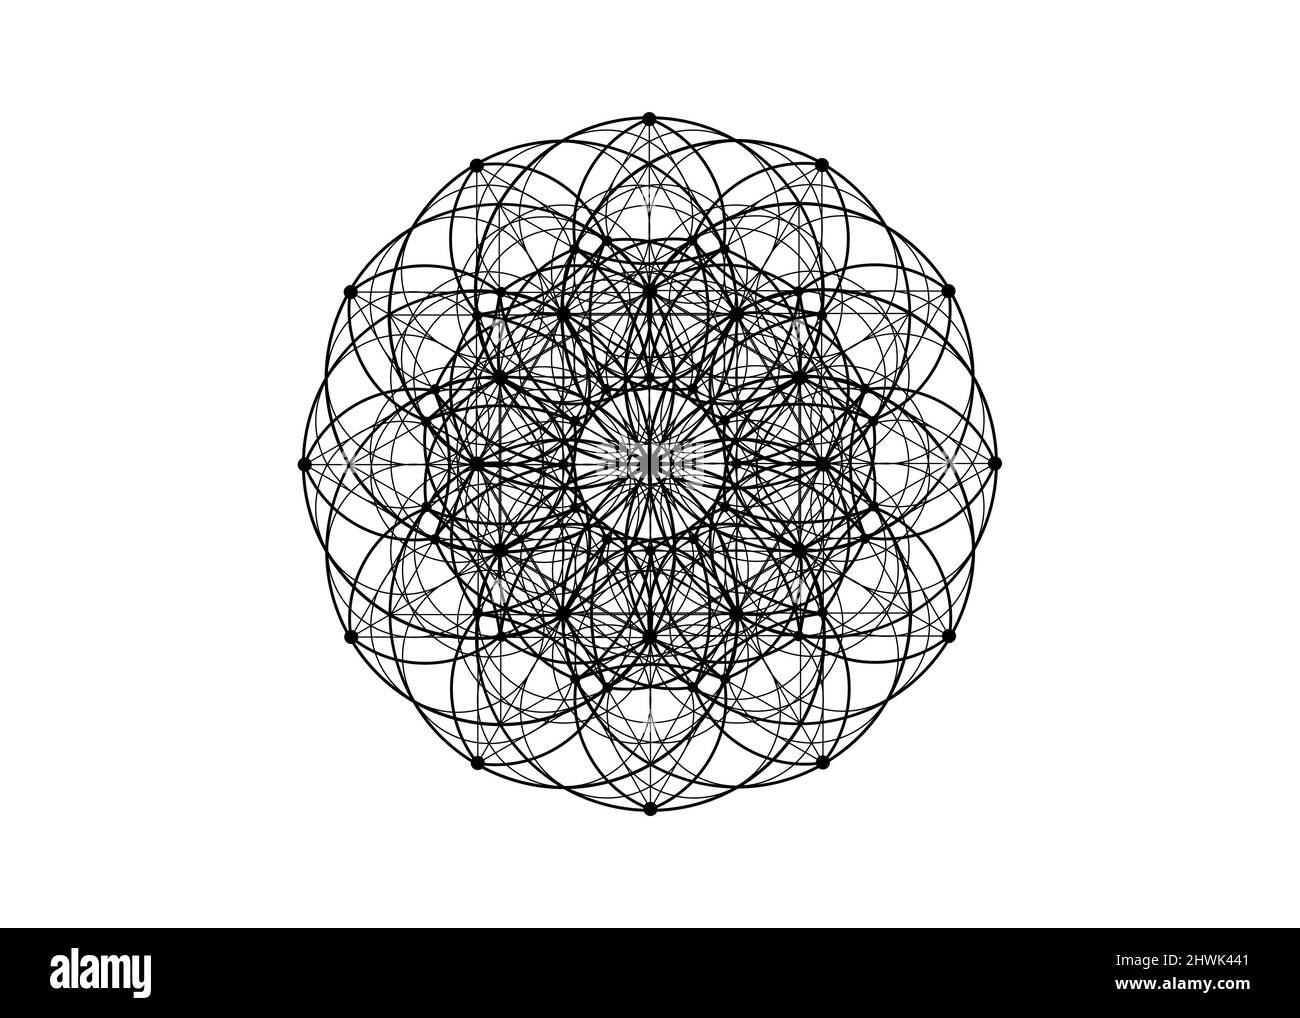 yantra fiore mandala geometria sacra, simbolo di armonia ed equilibrio. Colore nero talismano mistica, vettore di linee isolato su sfondo bianco Illustrazione Vettoriale